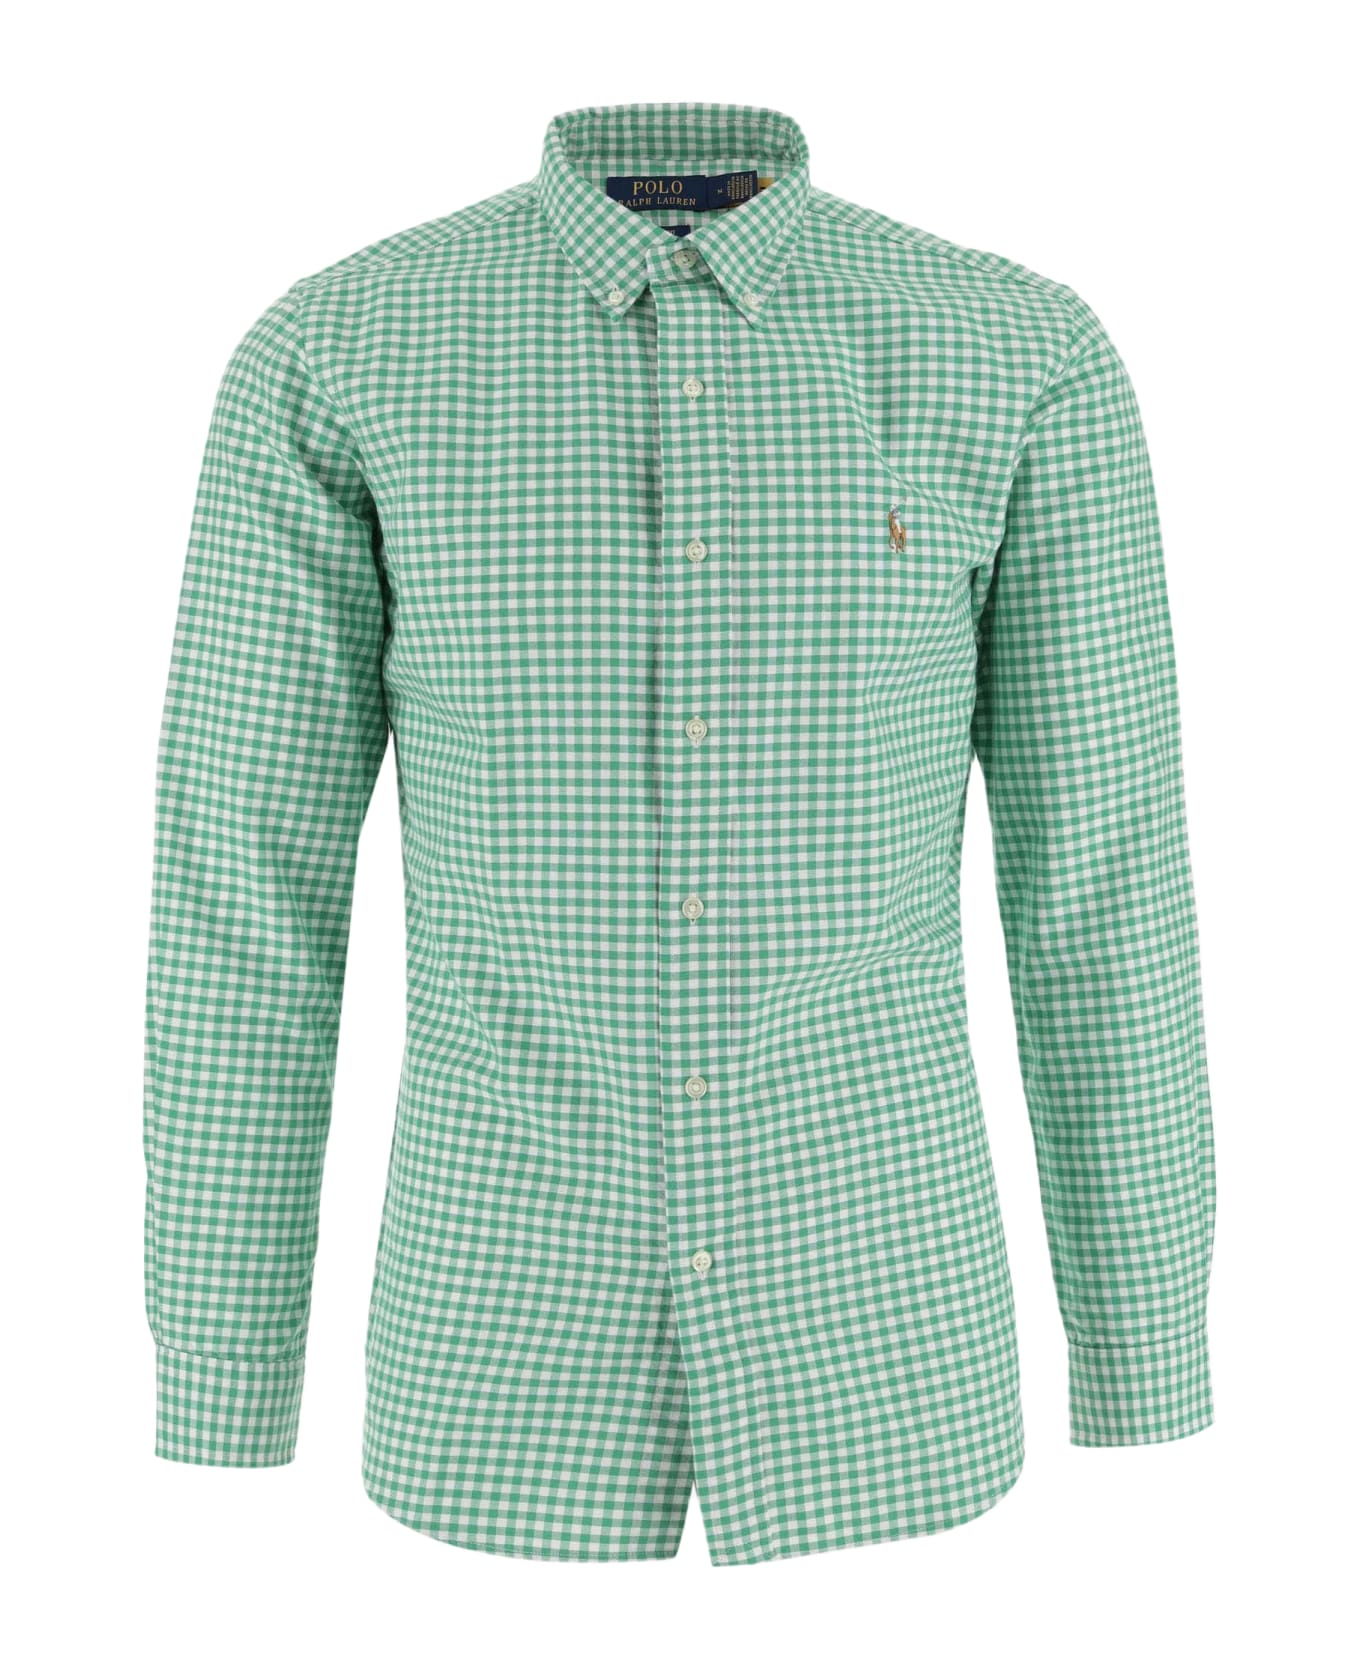 Ralph Lauren Cotton Shirt With Logo - GREEN/YELLOW